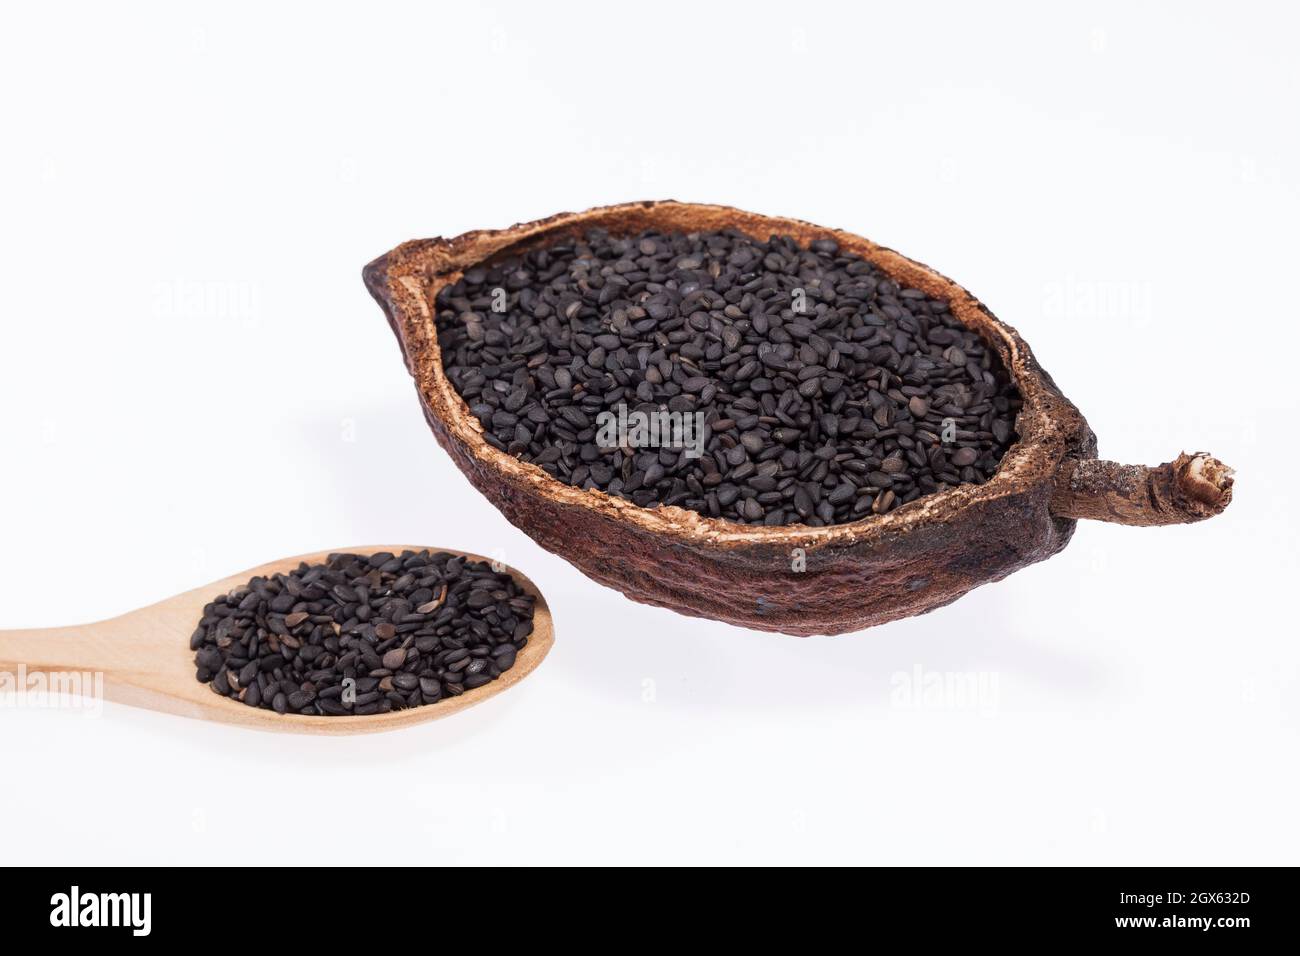 Graines biologiques noires de sésame - Sesamum indicum. Banque D'Images